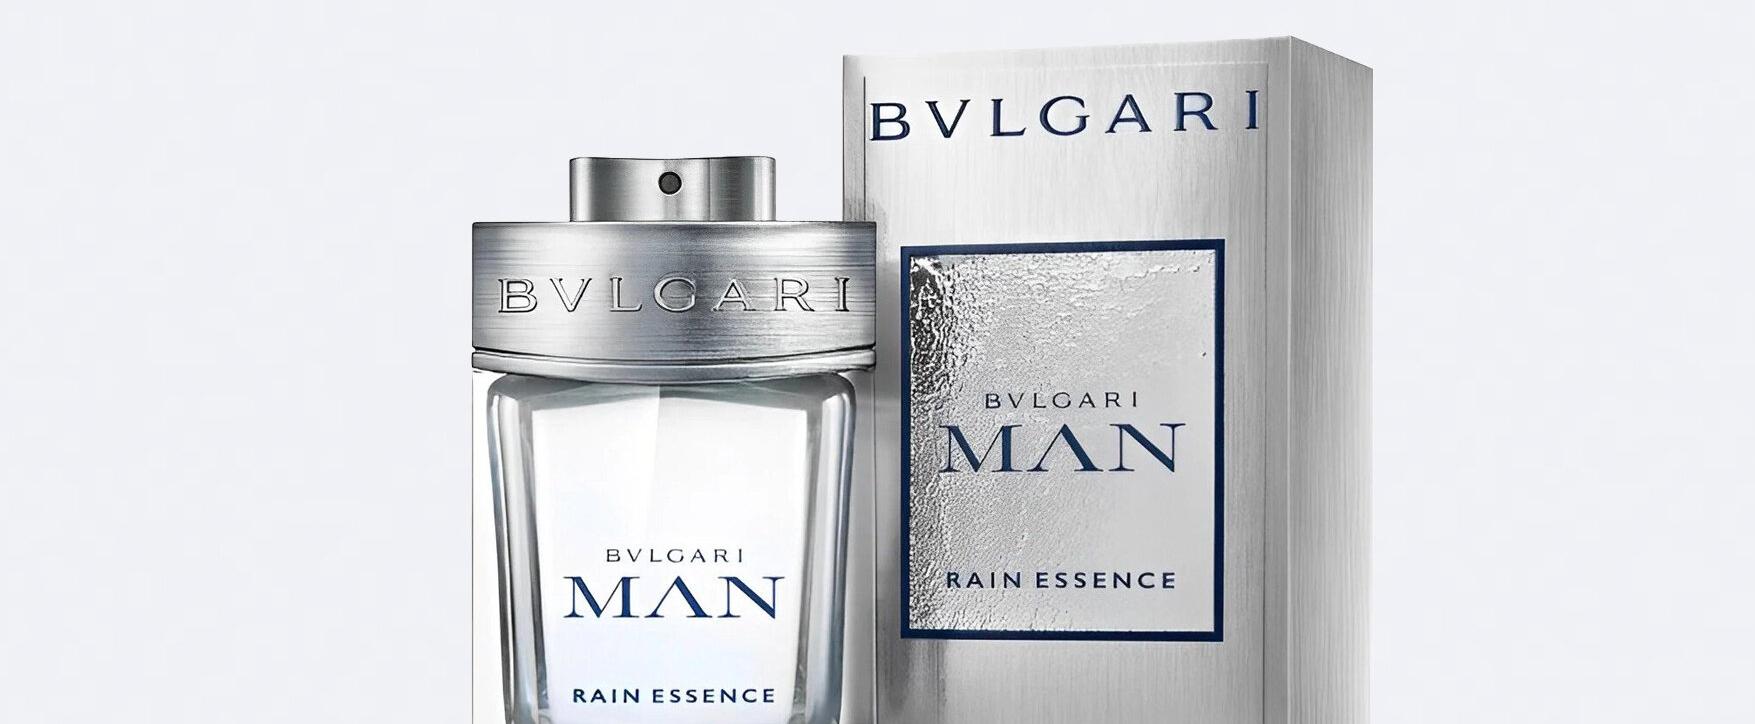 Die Kraft des Regens: Bvlgari präsentiert neuen Duft „Bvlgari Man Rain Essence“